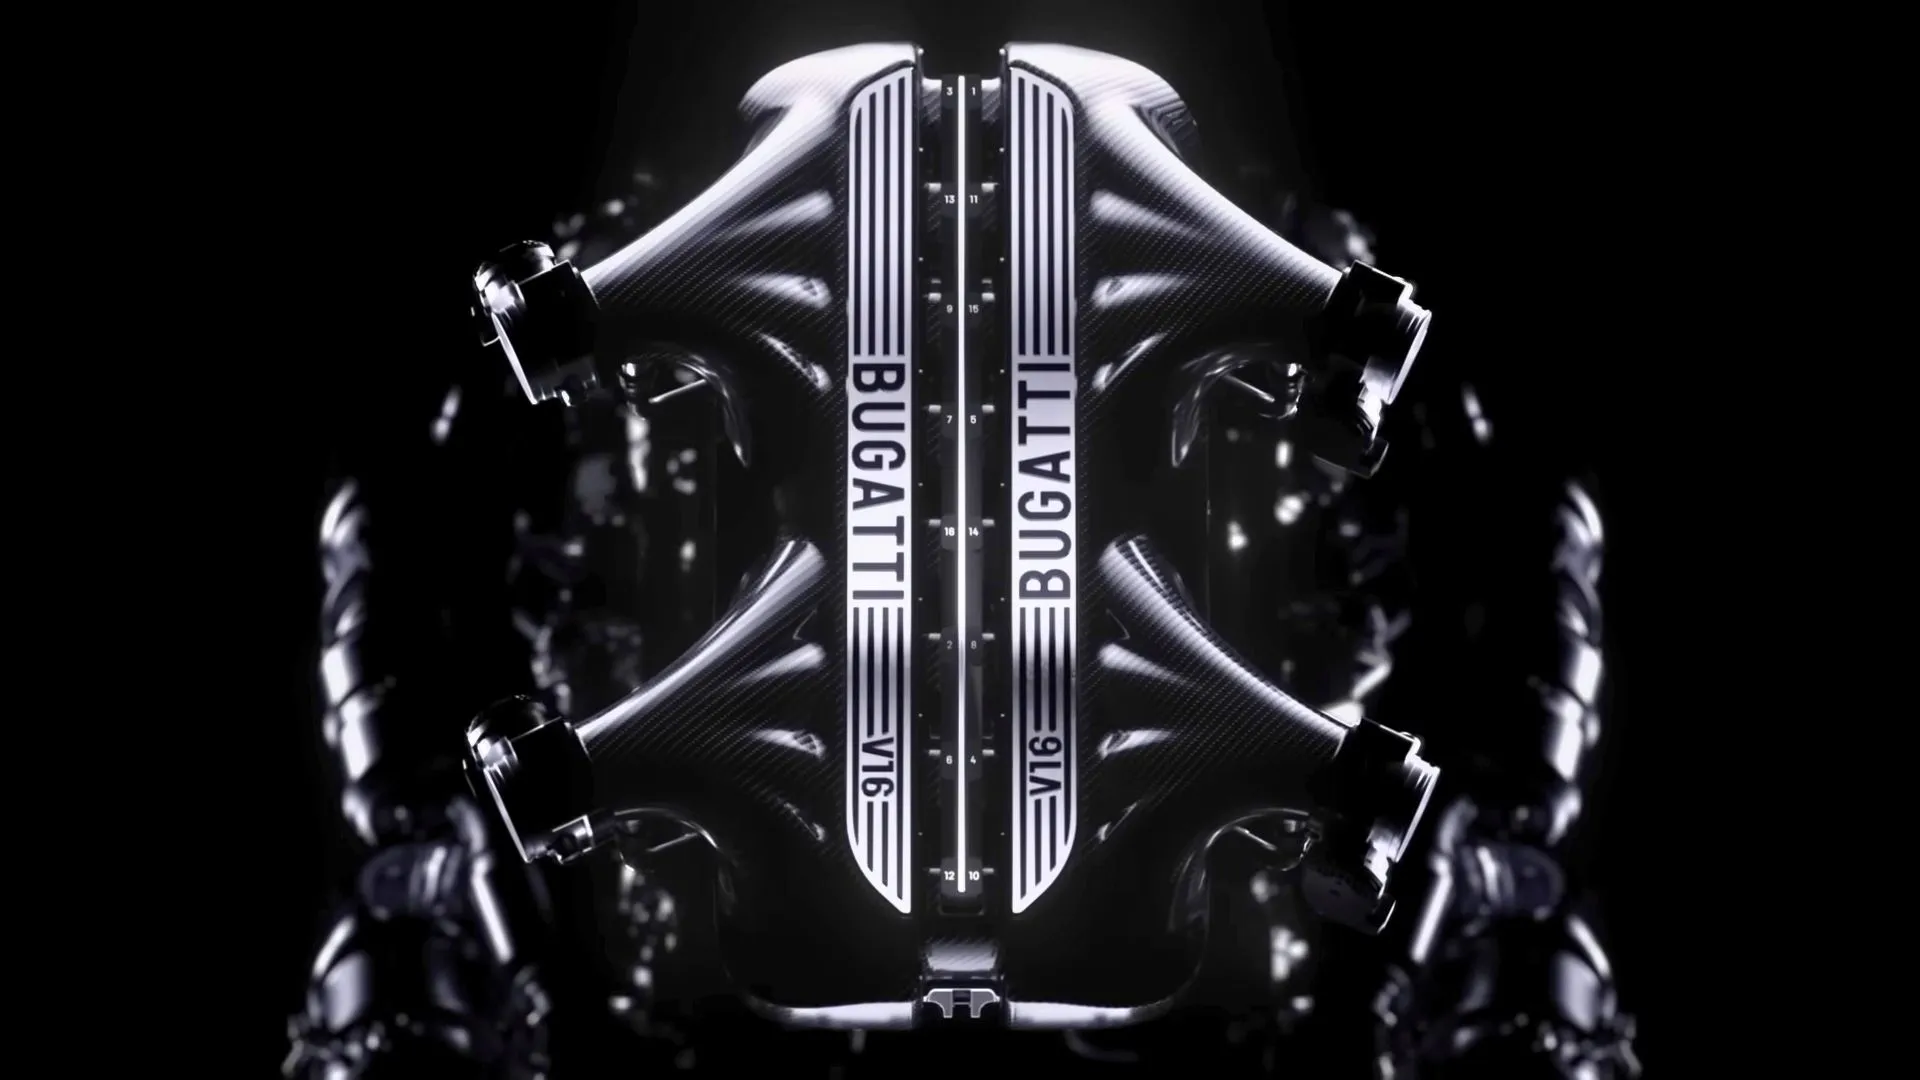 Bugatti heeft een nieuwe V16 hybride motor aangekondigd waarmee de auto snelheden tot 445 km/u kan halen.